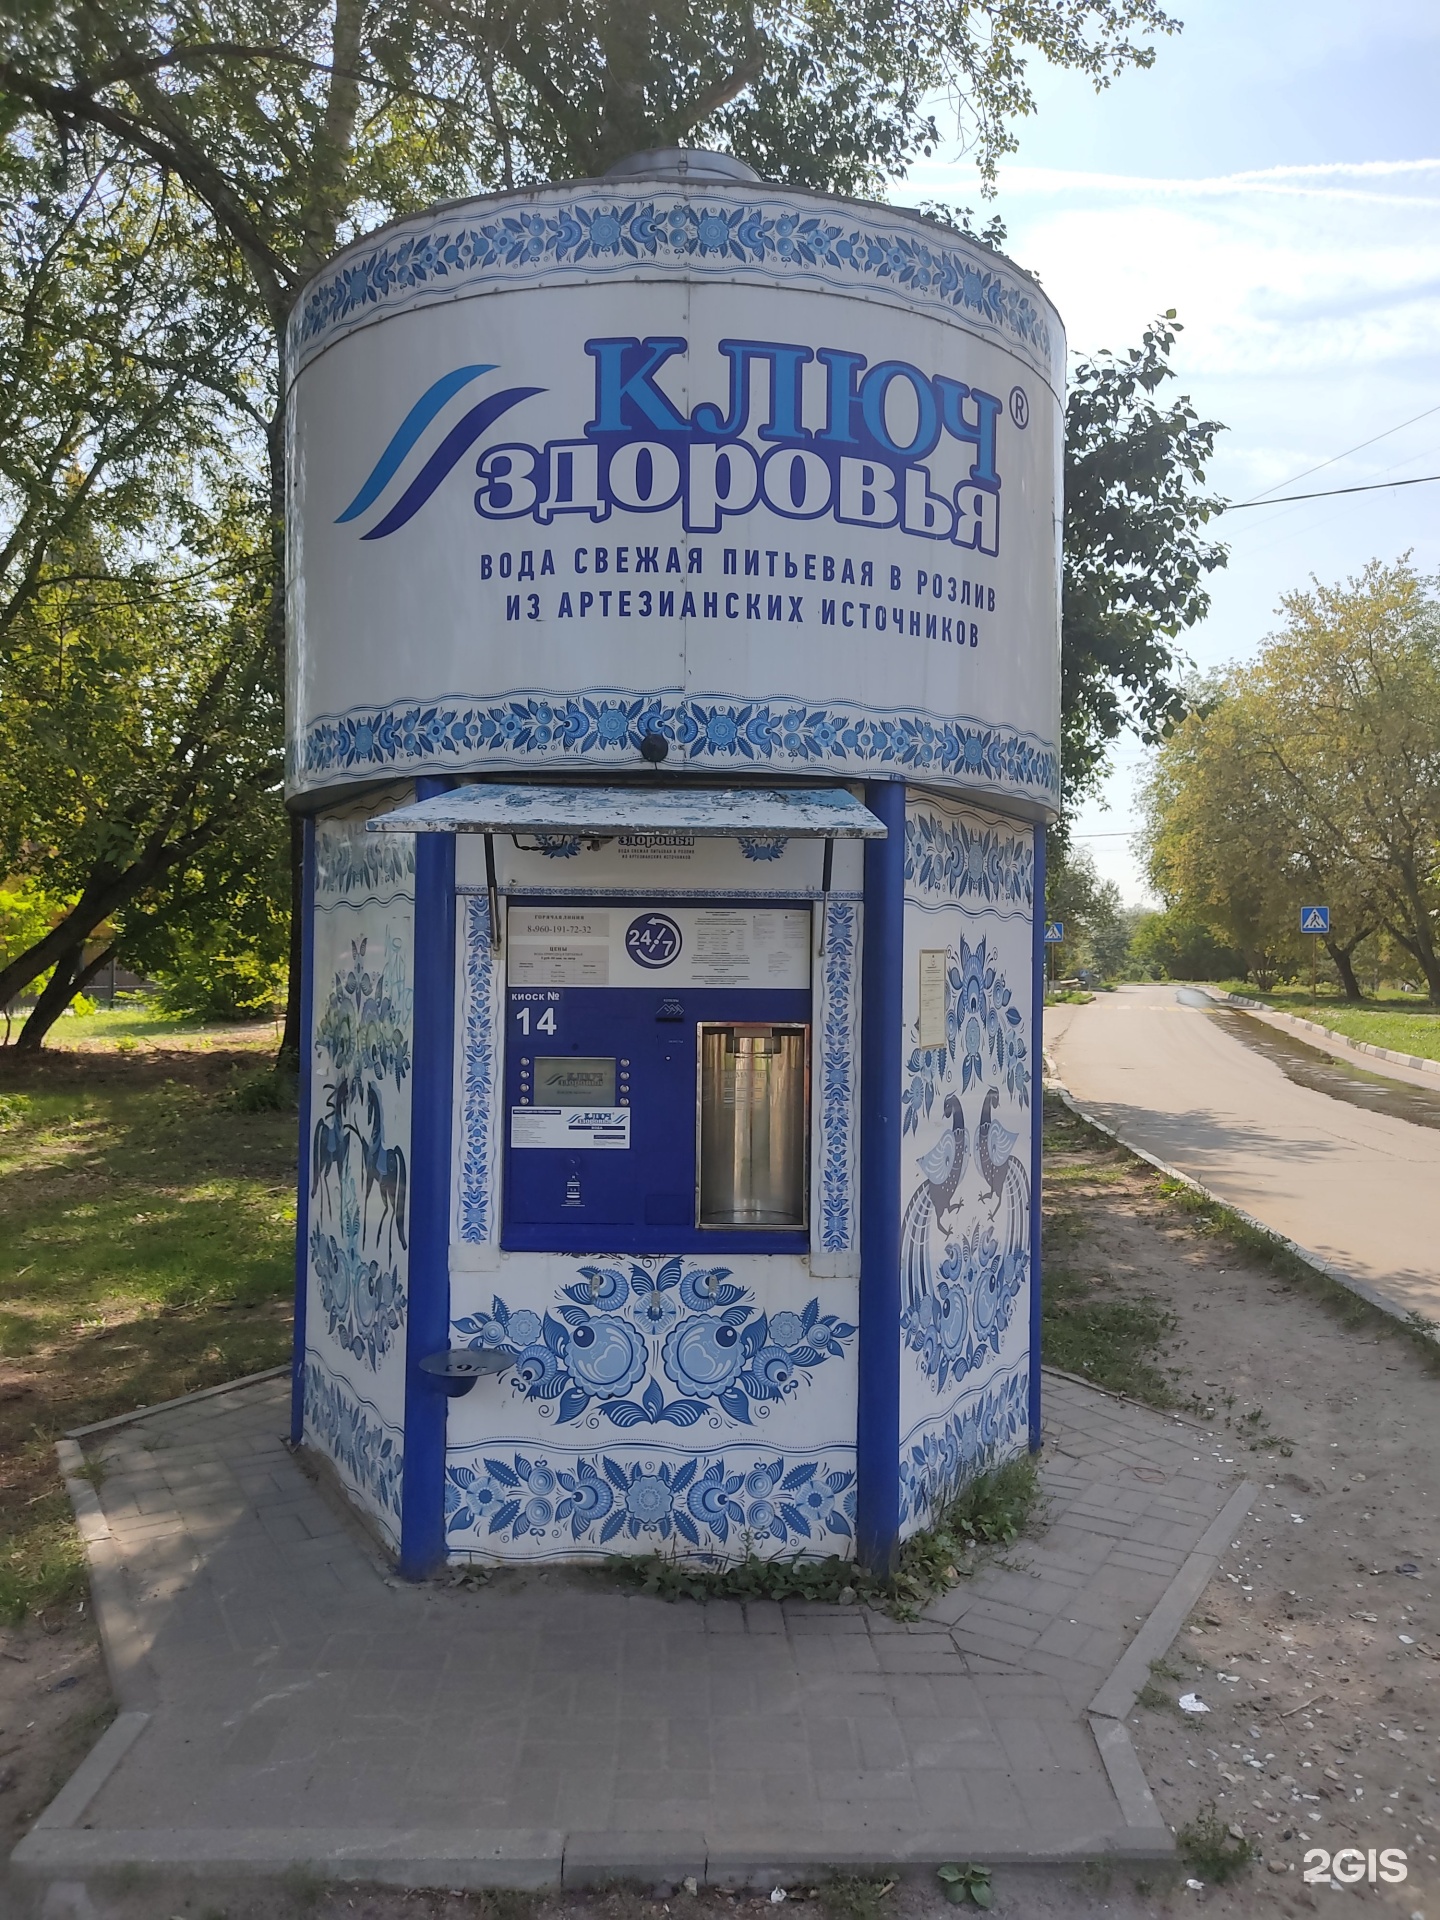 Доставка воды нижегородская. Автомат ключ здоровья. Ключи к здоровью. Автомат питьевой воды. Водоснабжение Нижний Новгород.